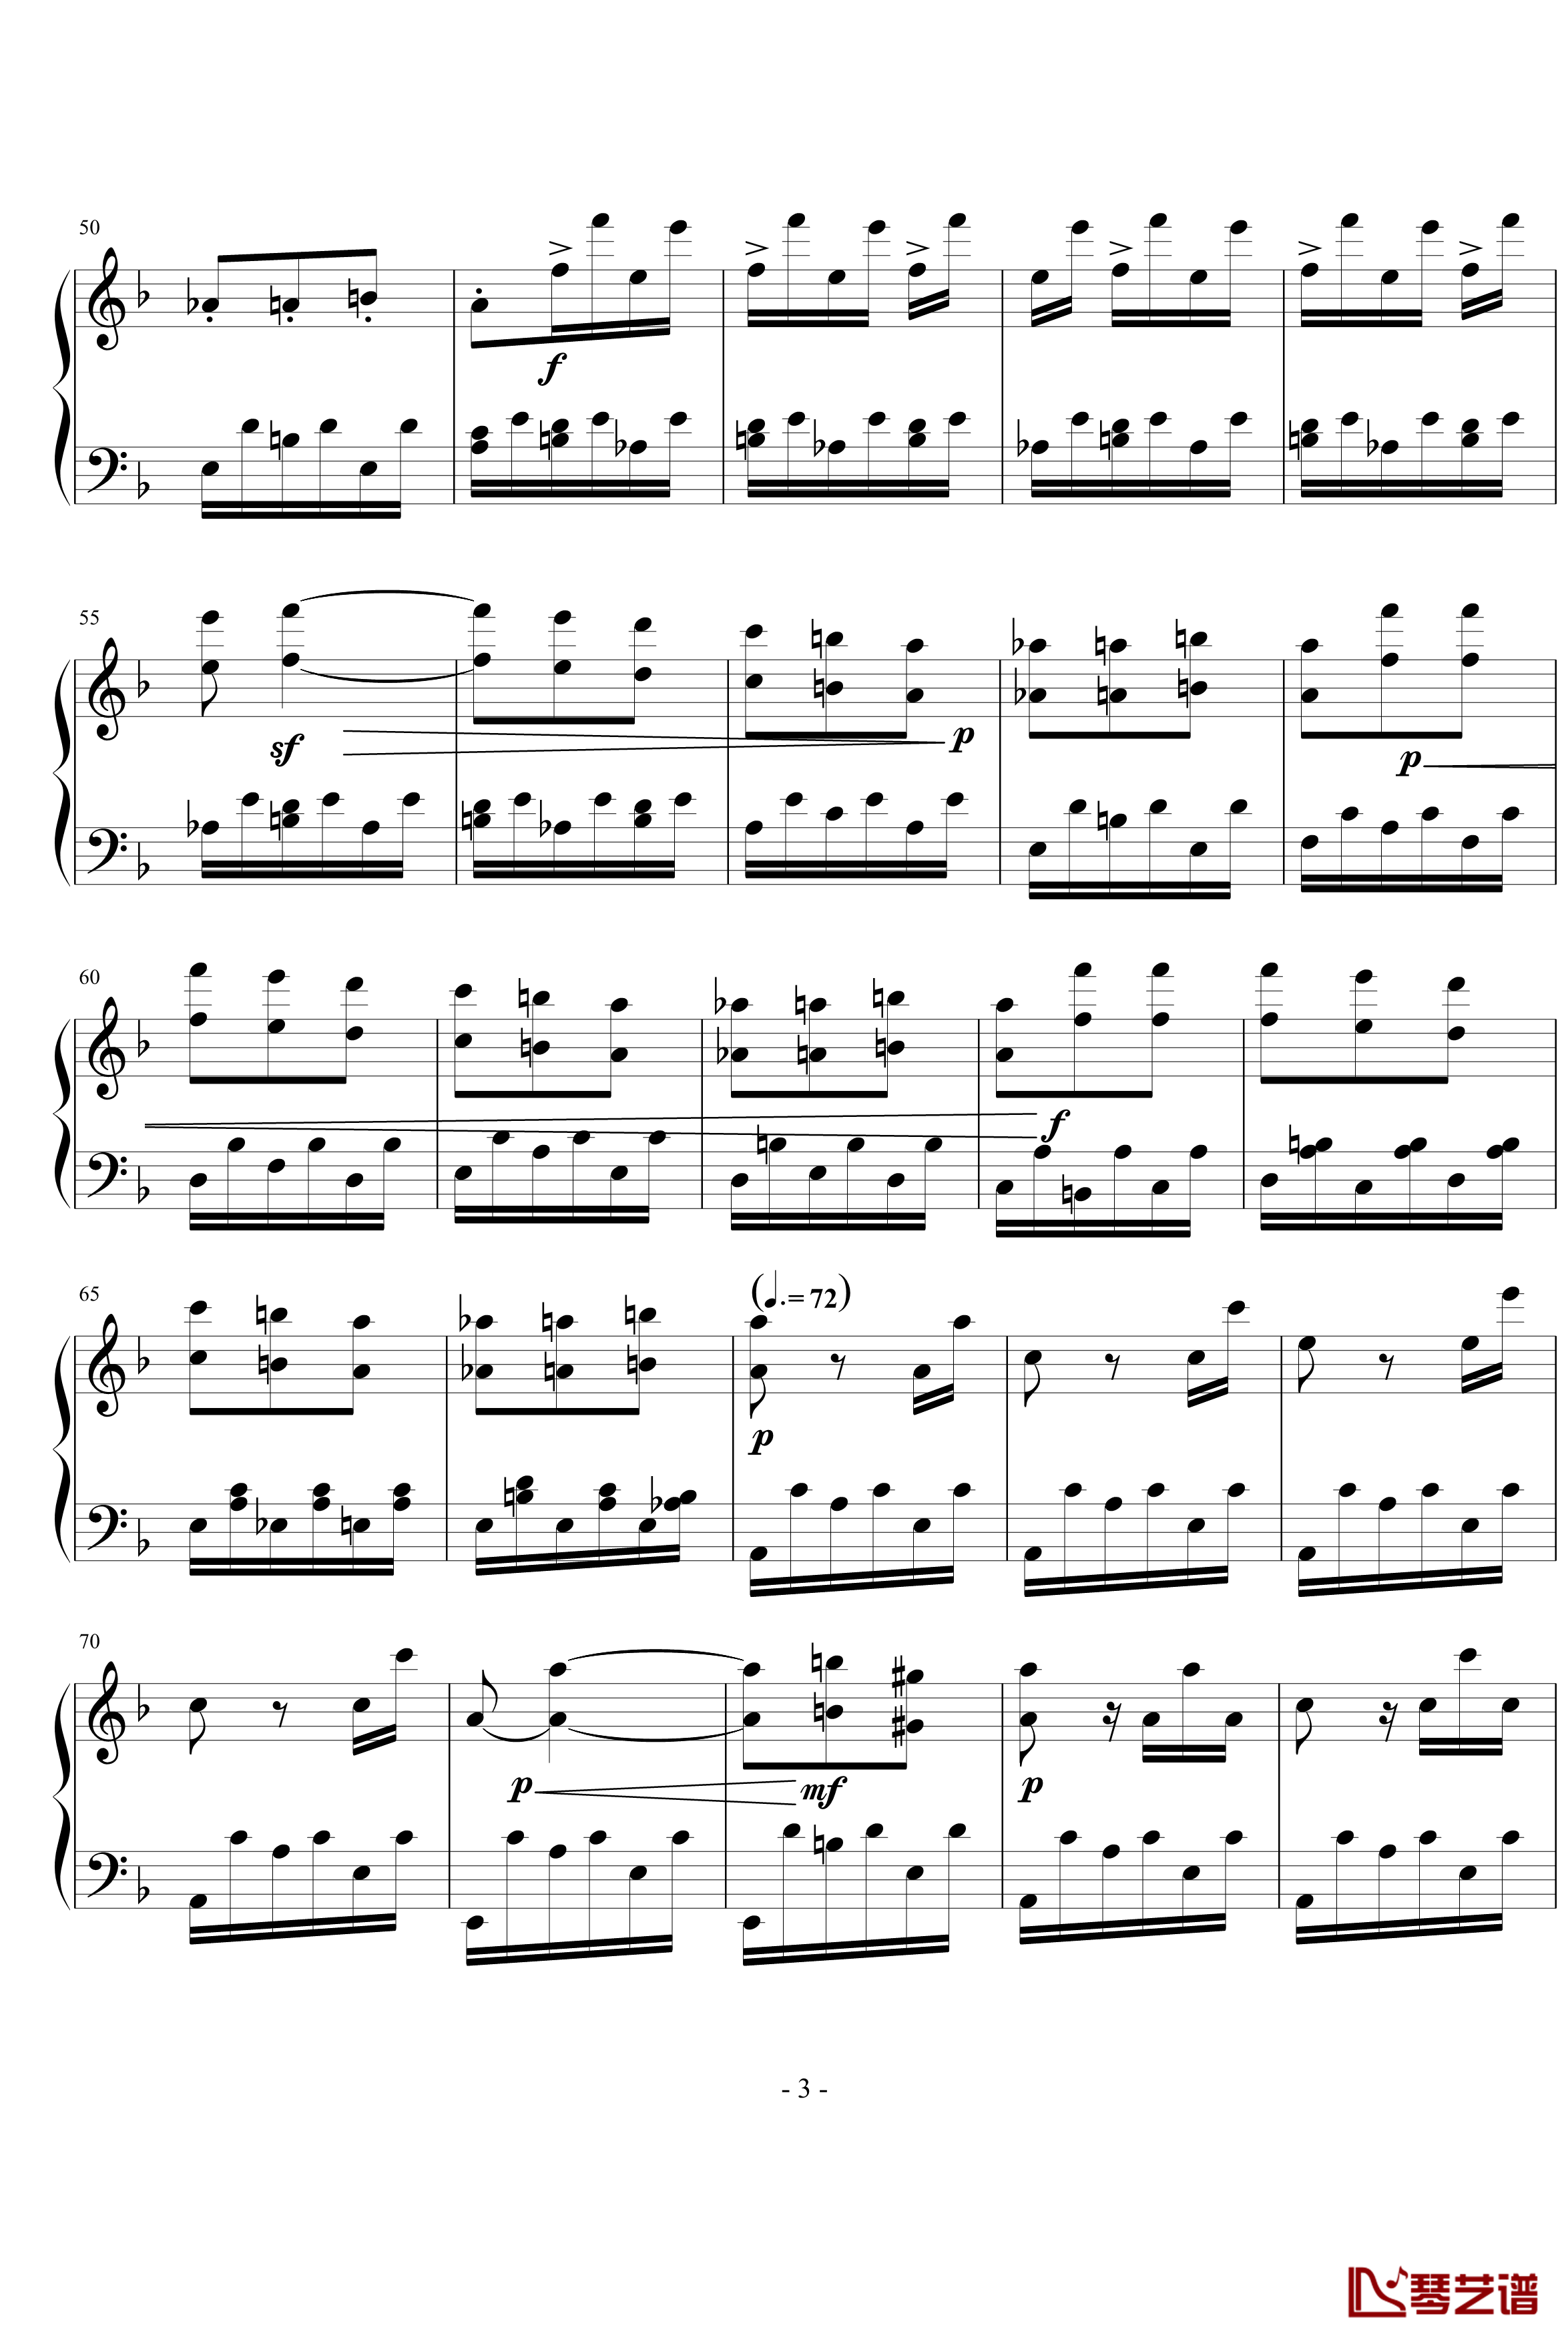 暴风雨第三乐章钢琴谱-贝多芬-beethoven3